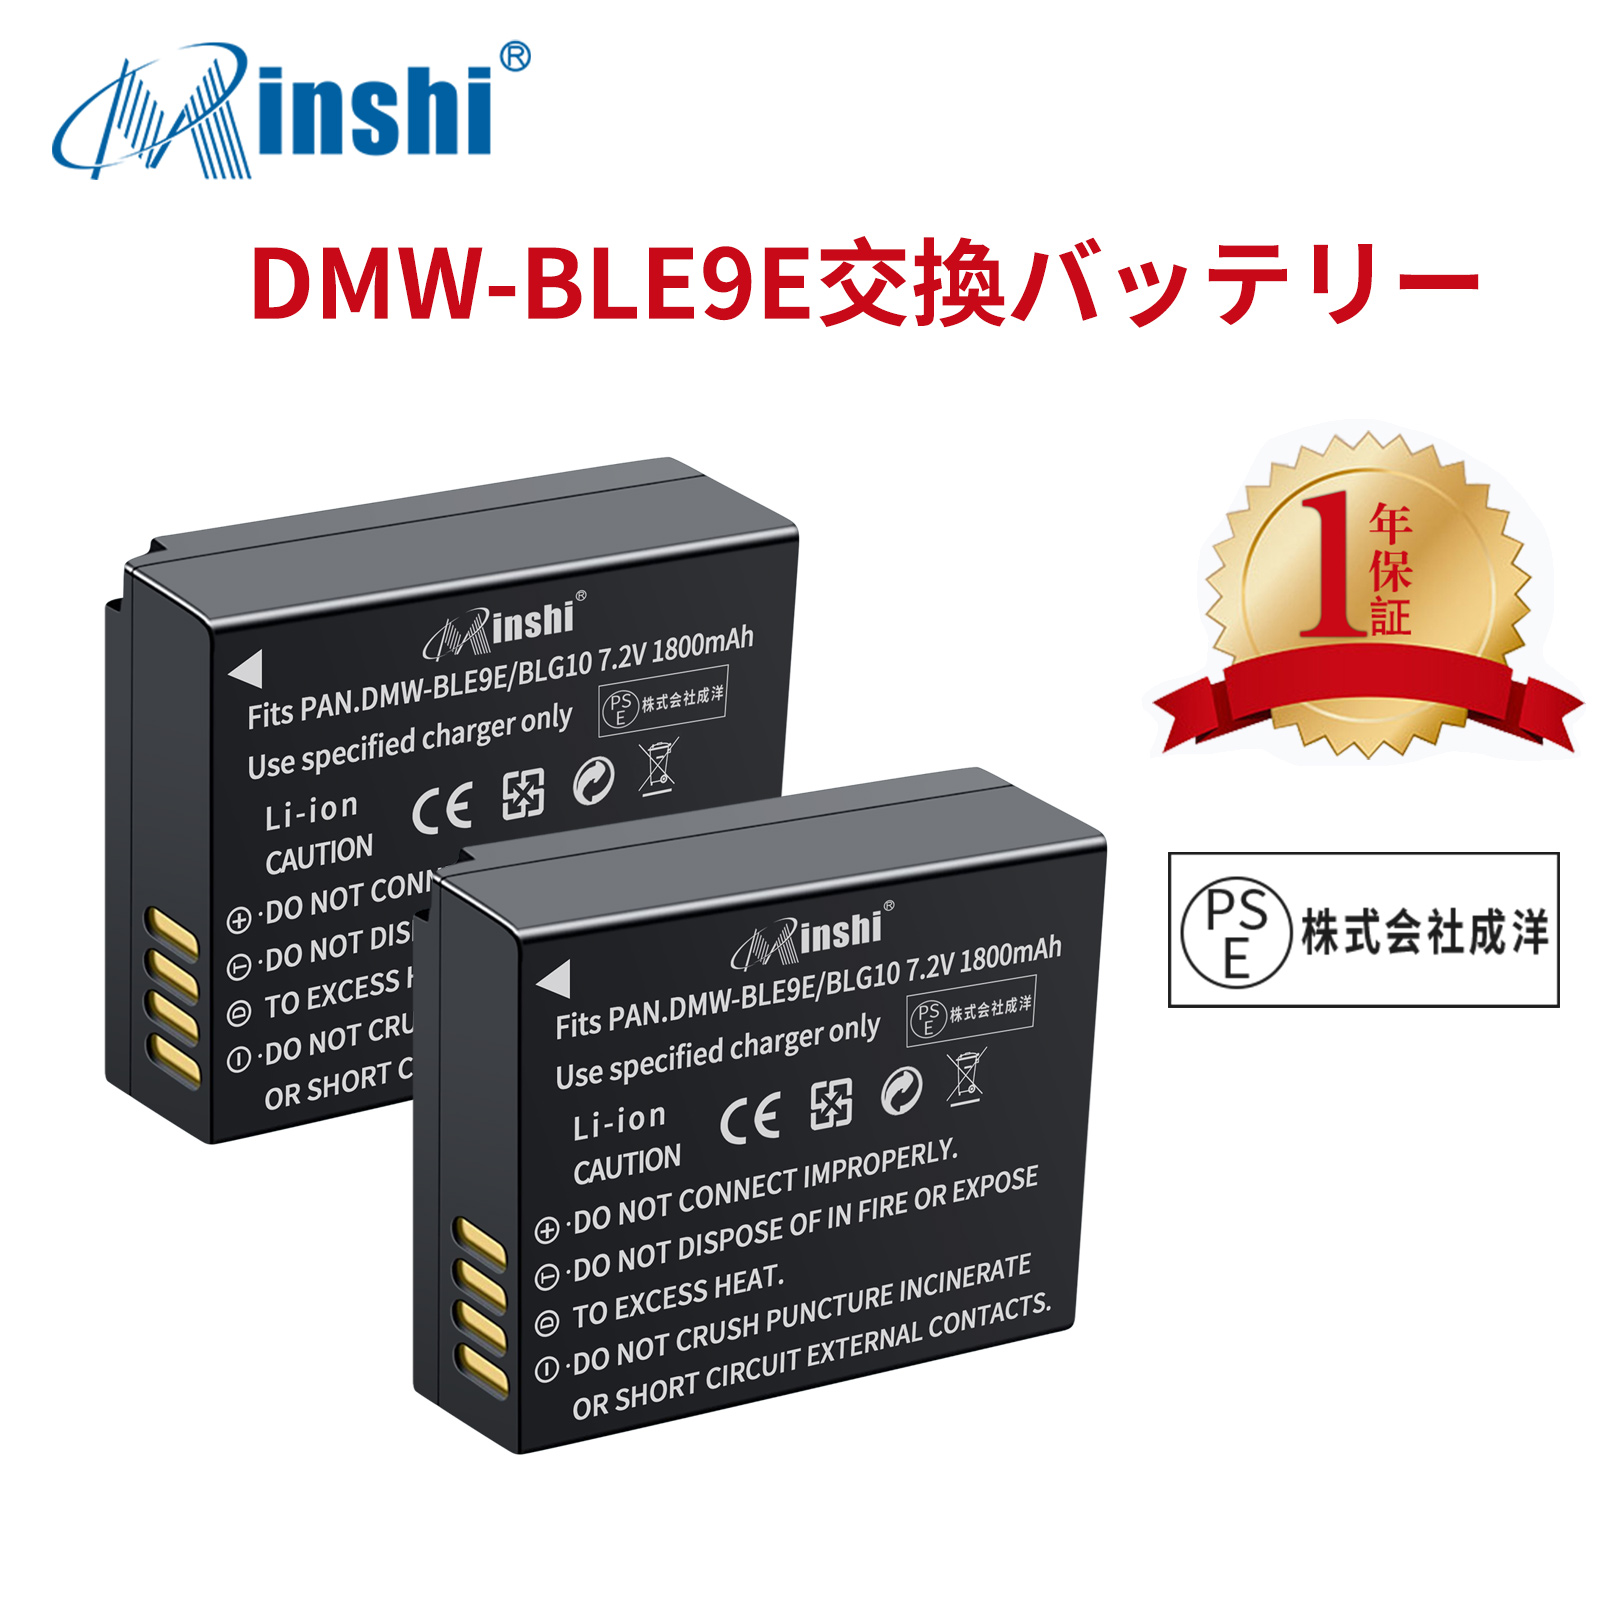 【２個セット】minshi Panasonic DC-TZ95 DMC-GF3   【1800mAh 7.2V】PSE認定済 高品質 DMW-BLG10 交換用バッテリー